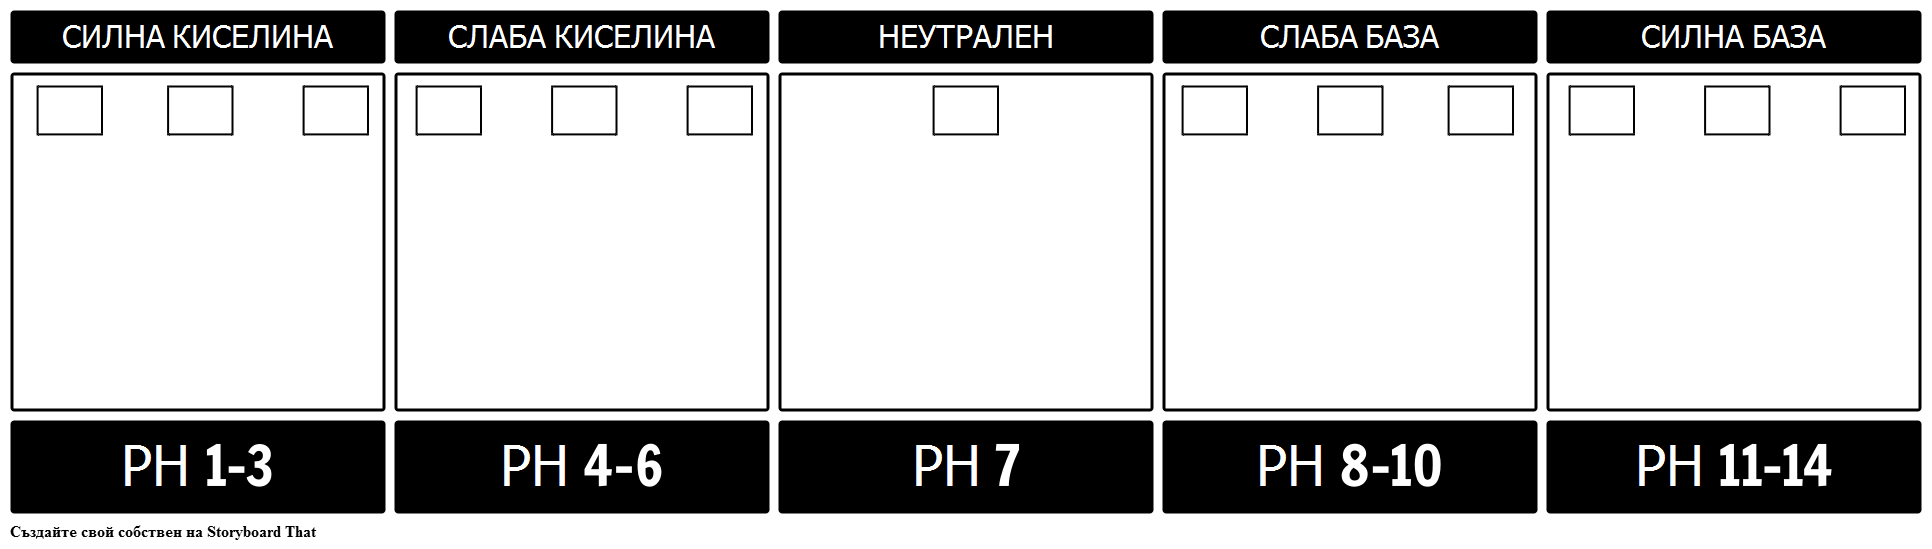 Шаблон за Мащаба на pH